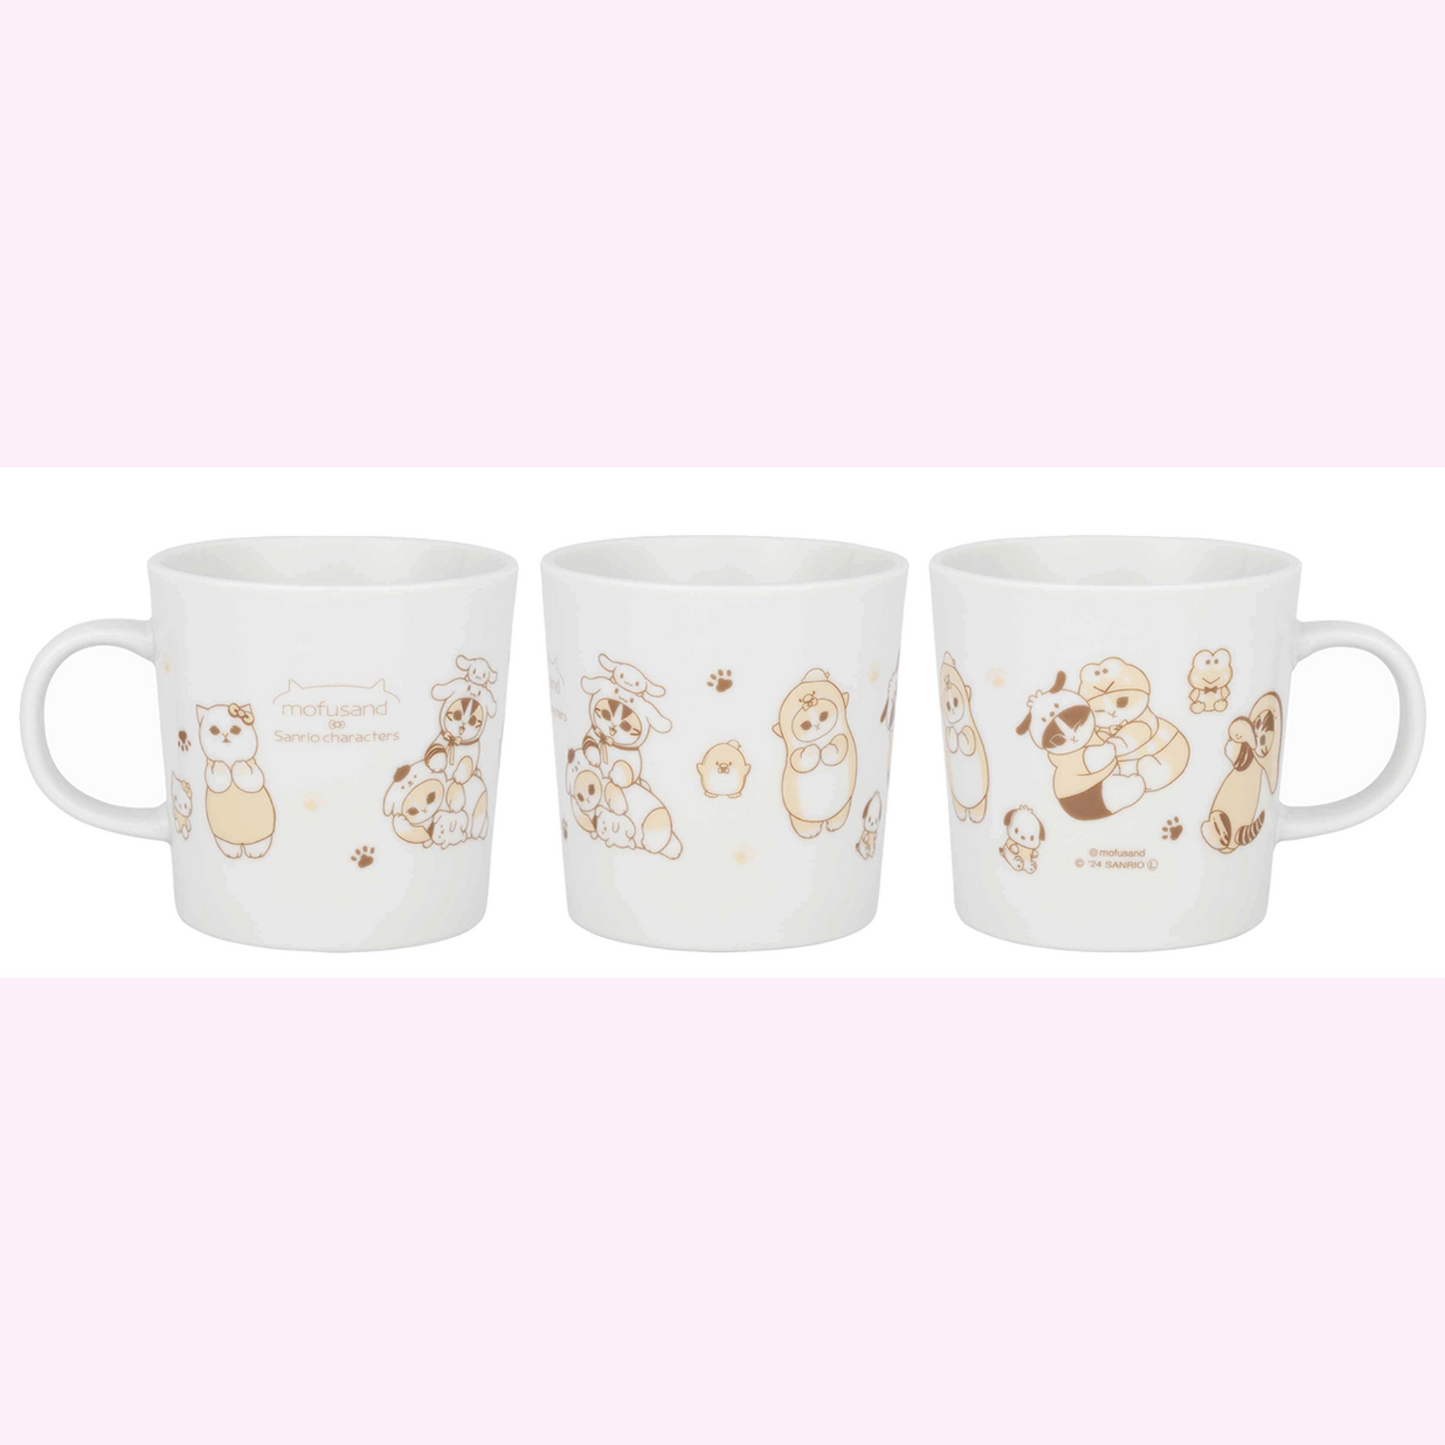 [Order] Mofusand x Sanrio 2nd Collaboration Series  - Mug Cup / Glass / Bowl